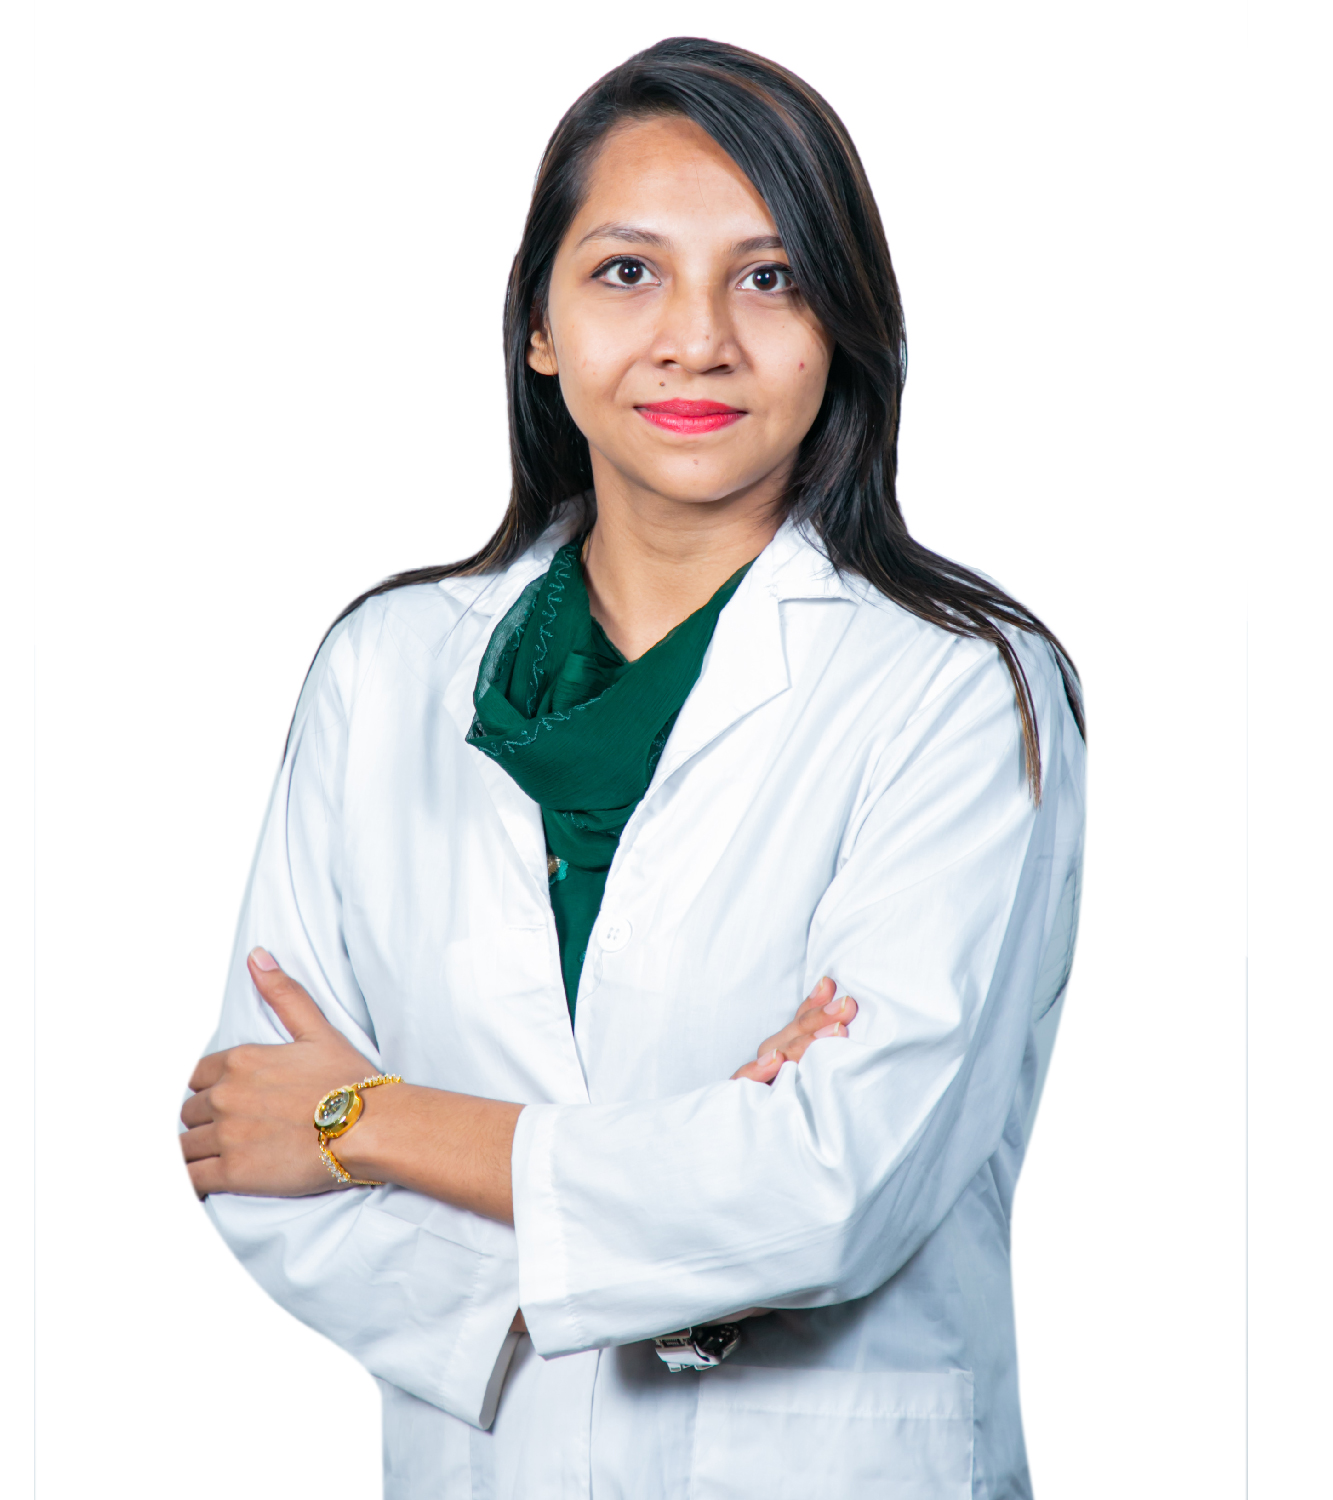 Dr. Sayeda Mukta Chowdhury